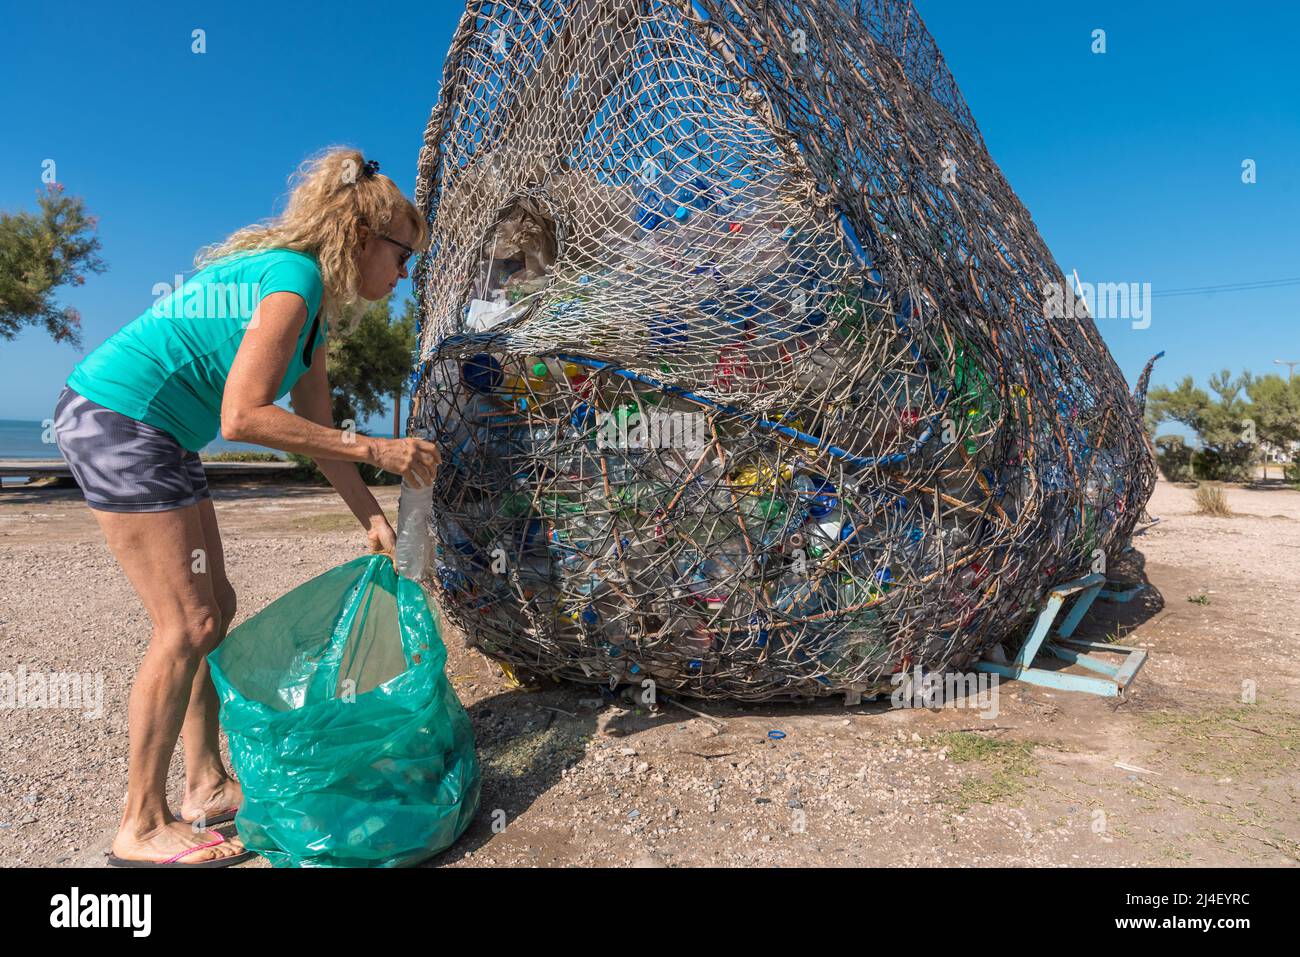 Reife blonde Frau mit Sonnenbrille, die eine Plastikflasche in einen Abfalleimer voller recycelbarem Material legt Stockfoto